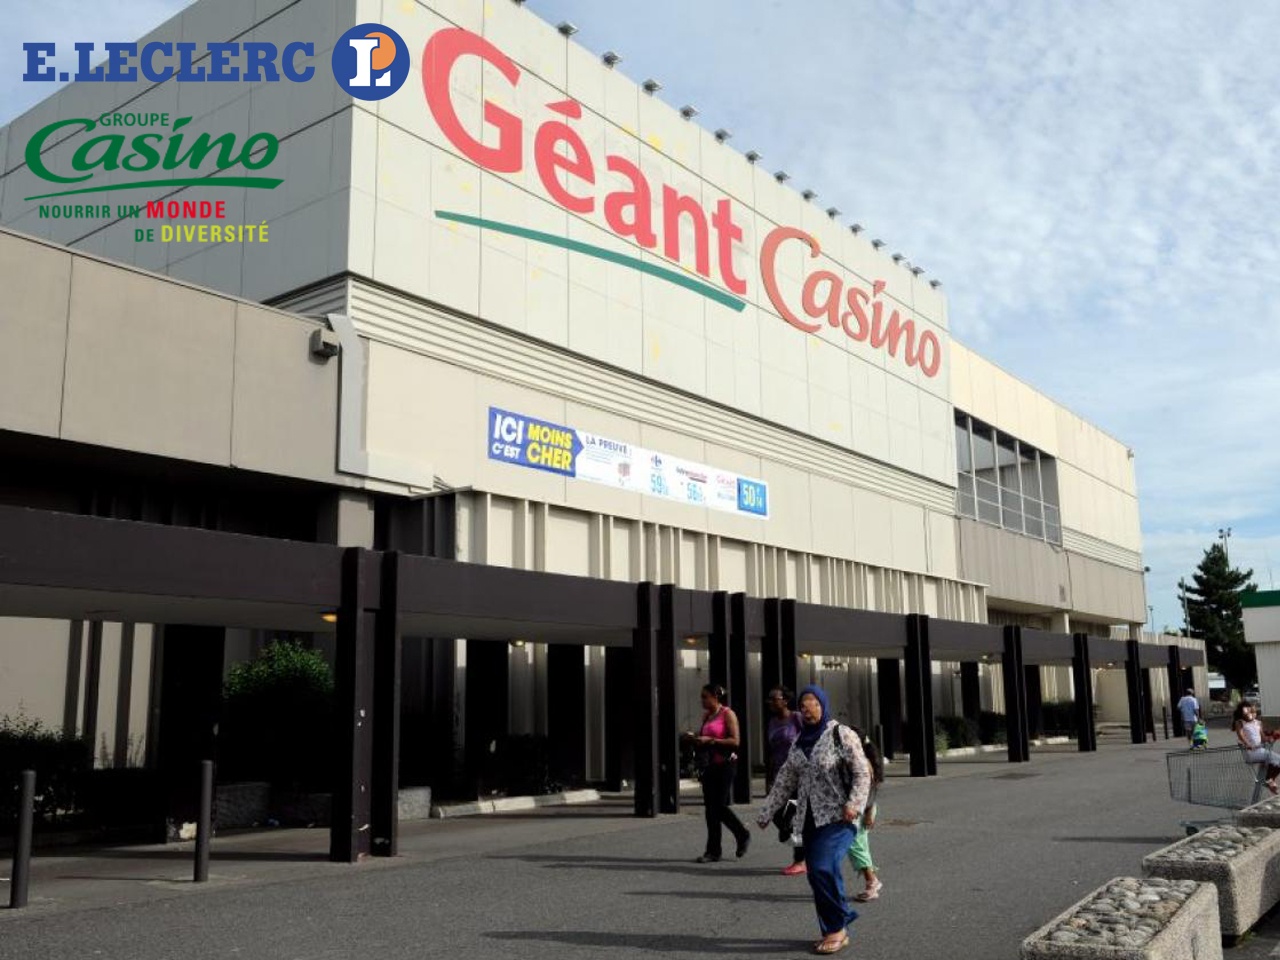 Les magasins Géant Casino bientôt sous la houlette de Leclerc ?